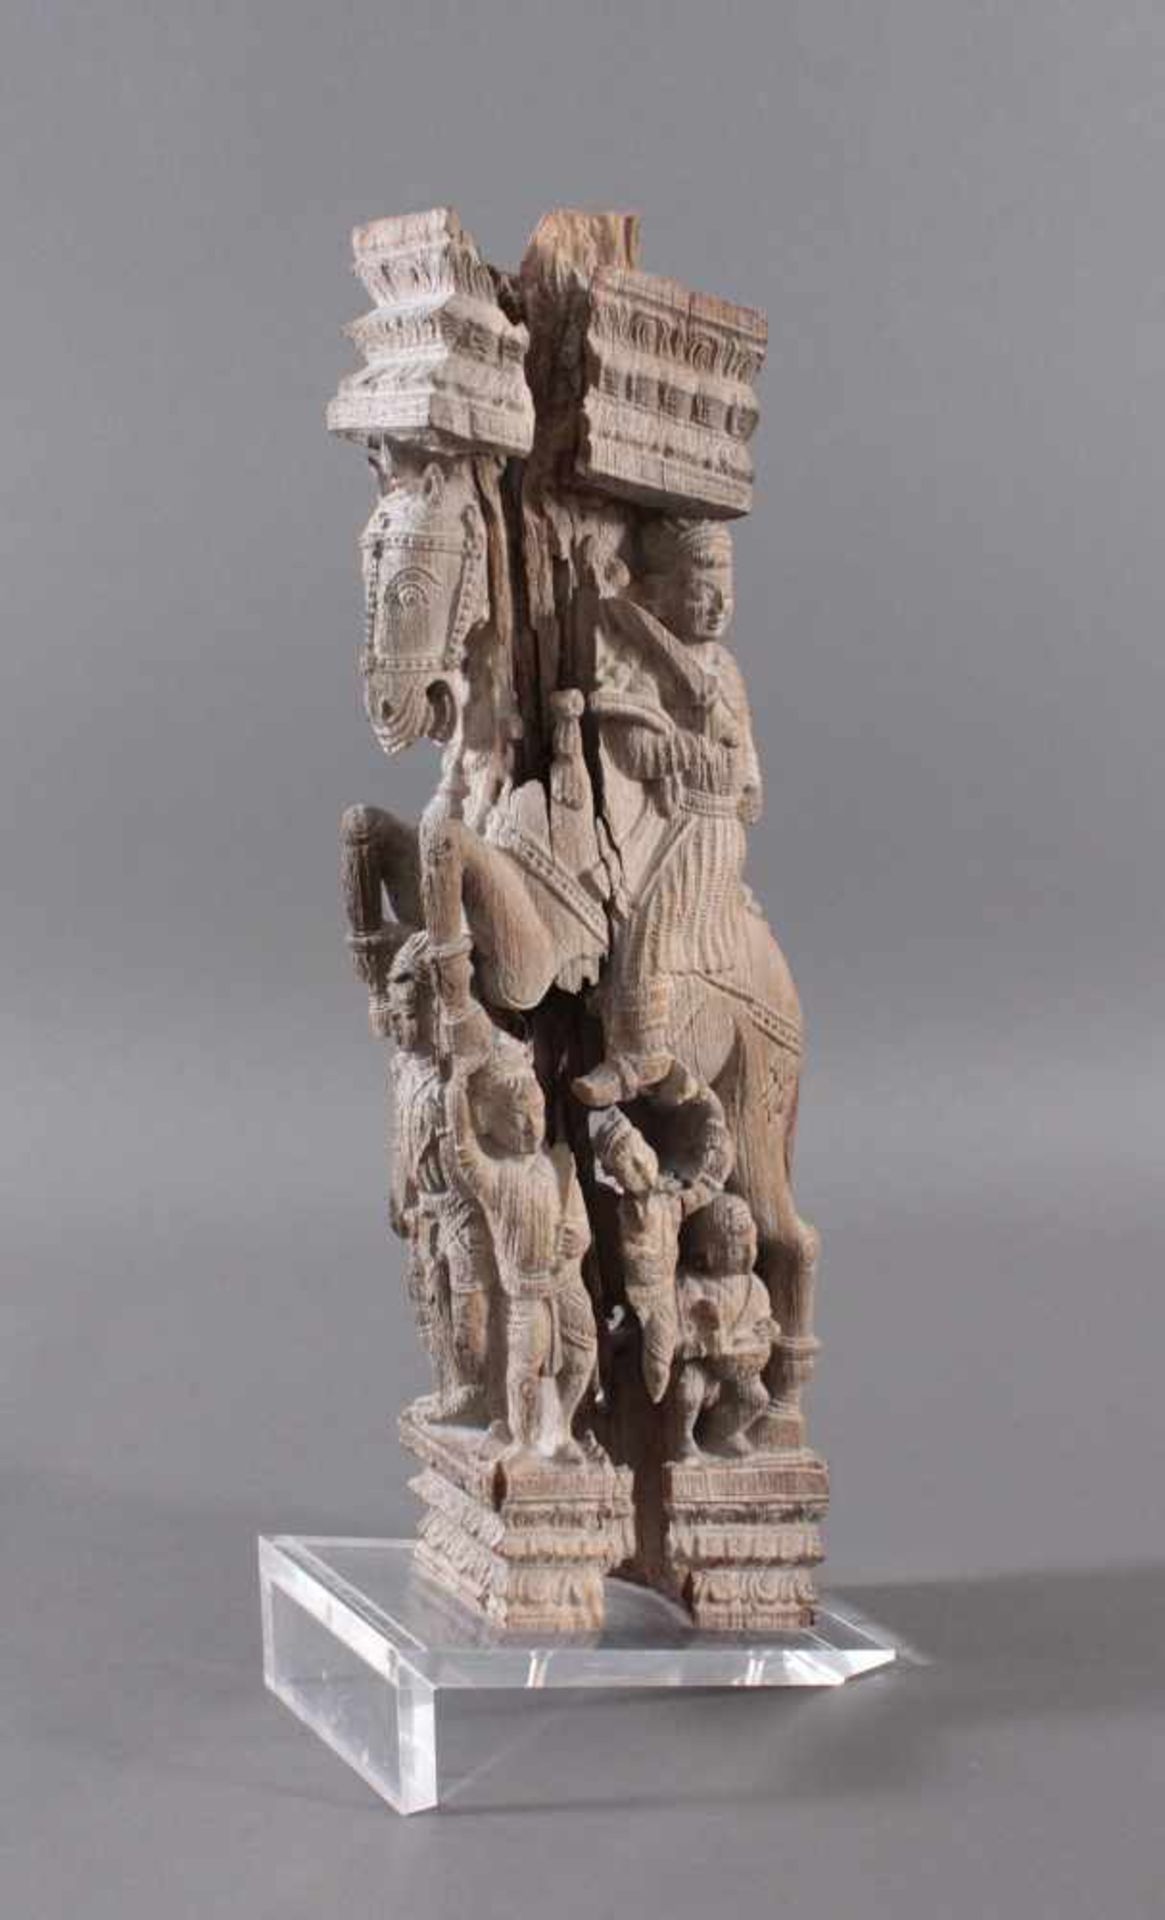 Holzplastik eines Reiters auf einem Pferd, Indien wohl Orissa 15./16. Jh. - Bild 3 aus 13